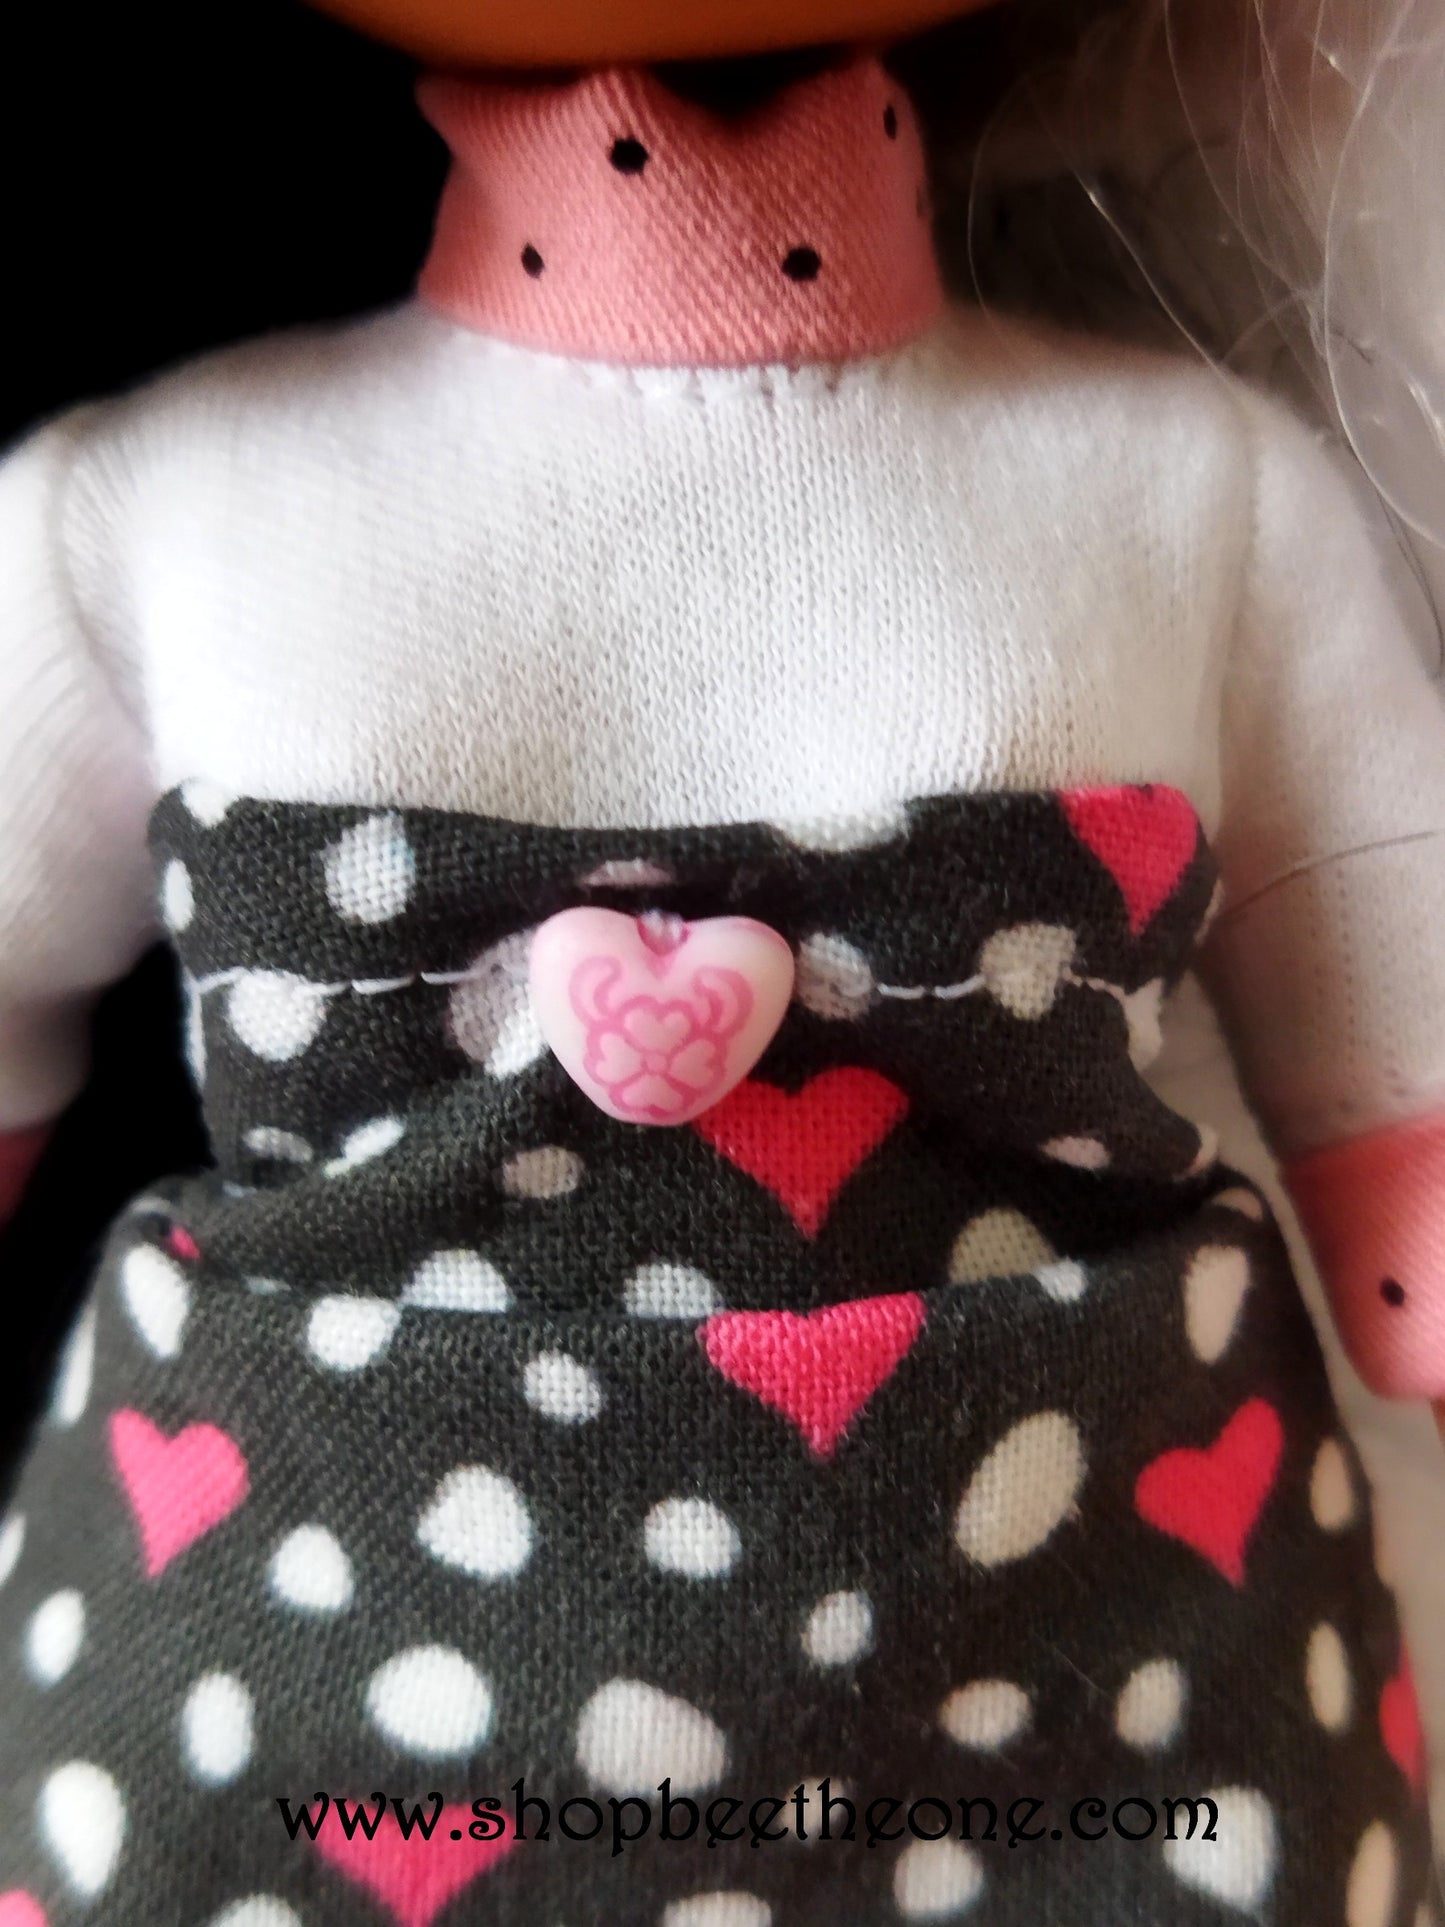 Robe courte "Coeurs et pois" en coton pour poupées L.O.L Surprise! O.M.G - Collection Saint Valentin - par Bee the One